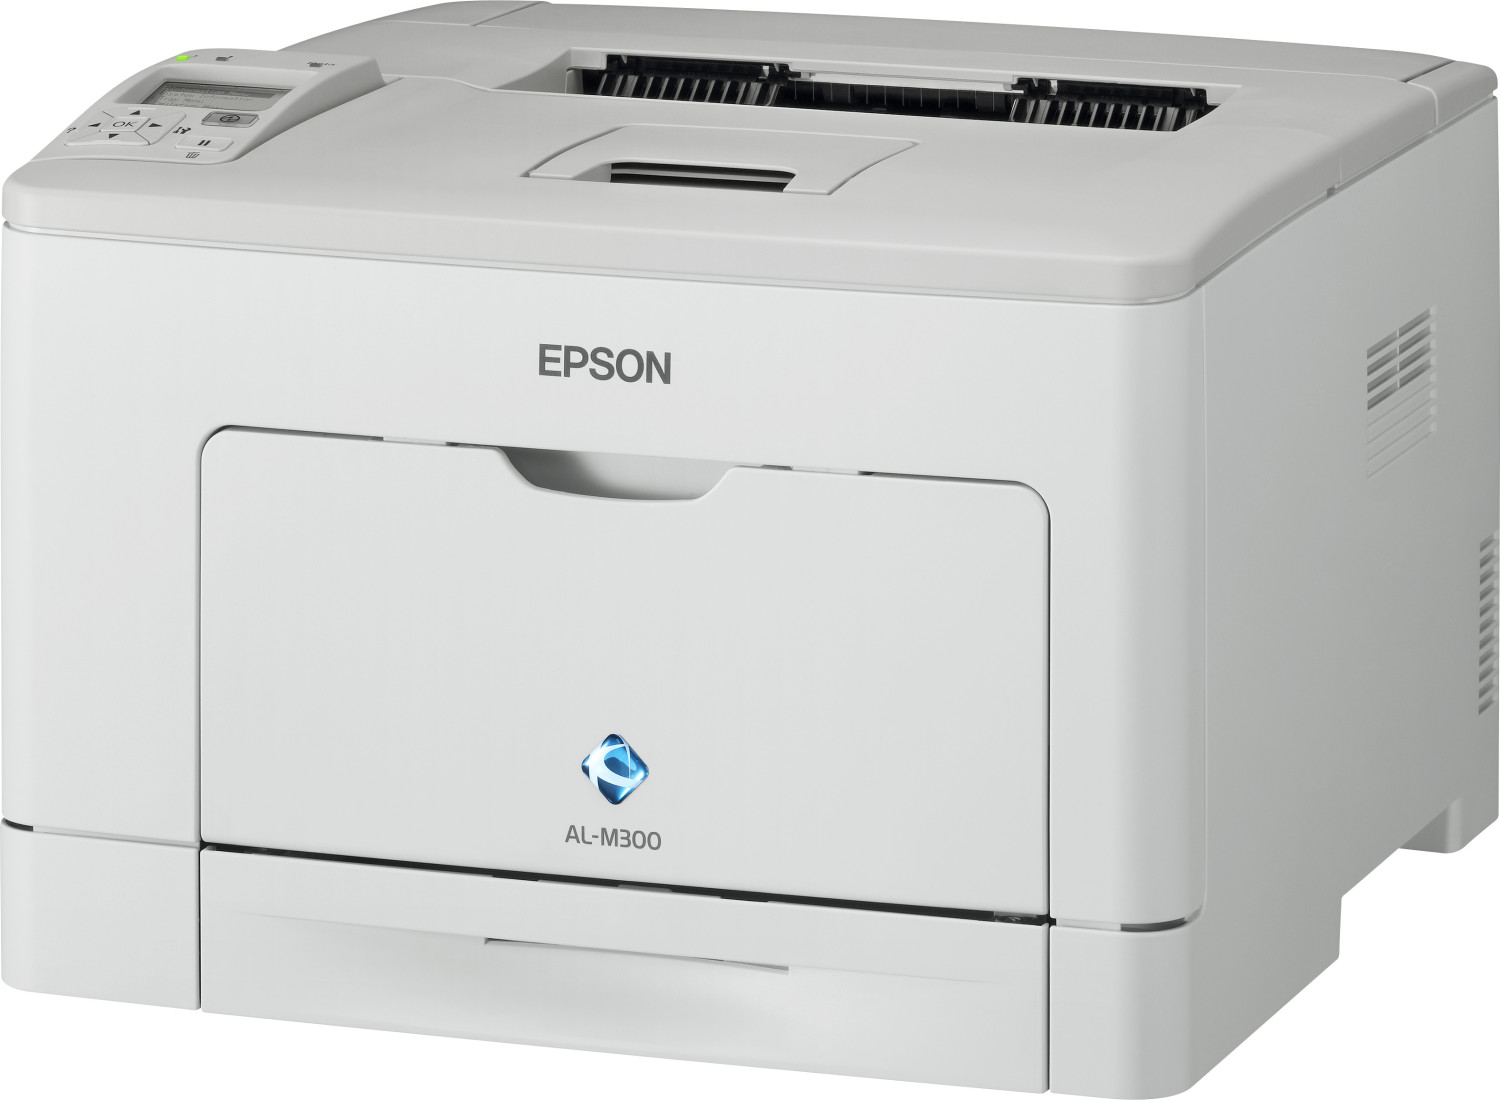 Bild zu Schwarzweiß Laserdrucker Epson WorkForce AL-M300DN für 59,90€ (Vergleich: 78,99€)